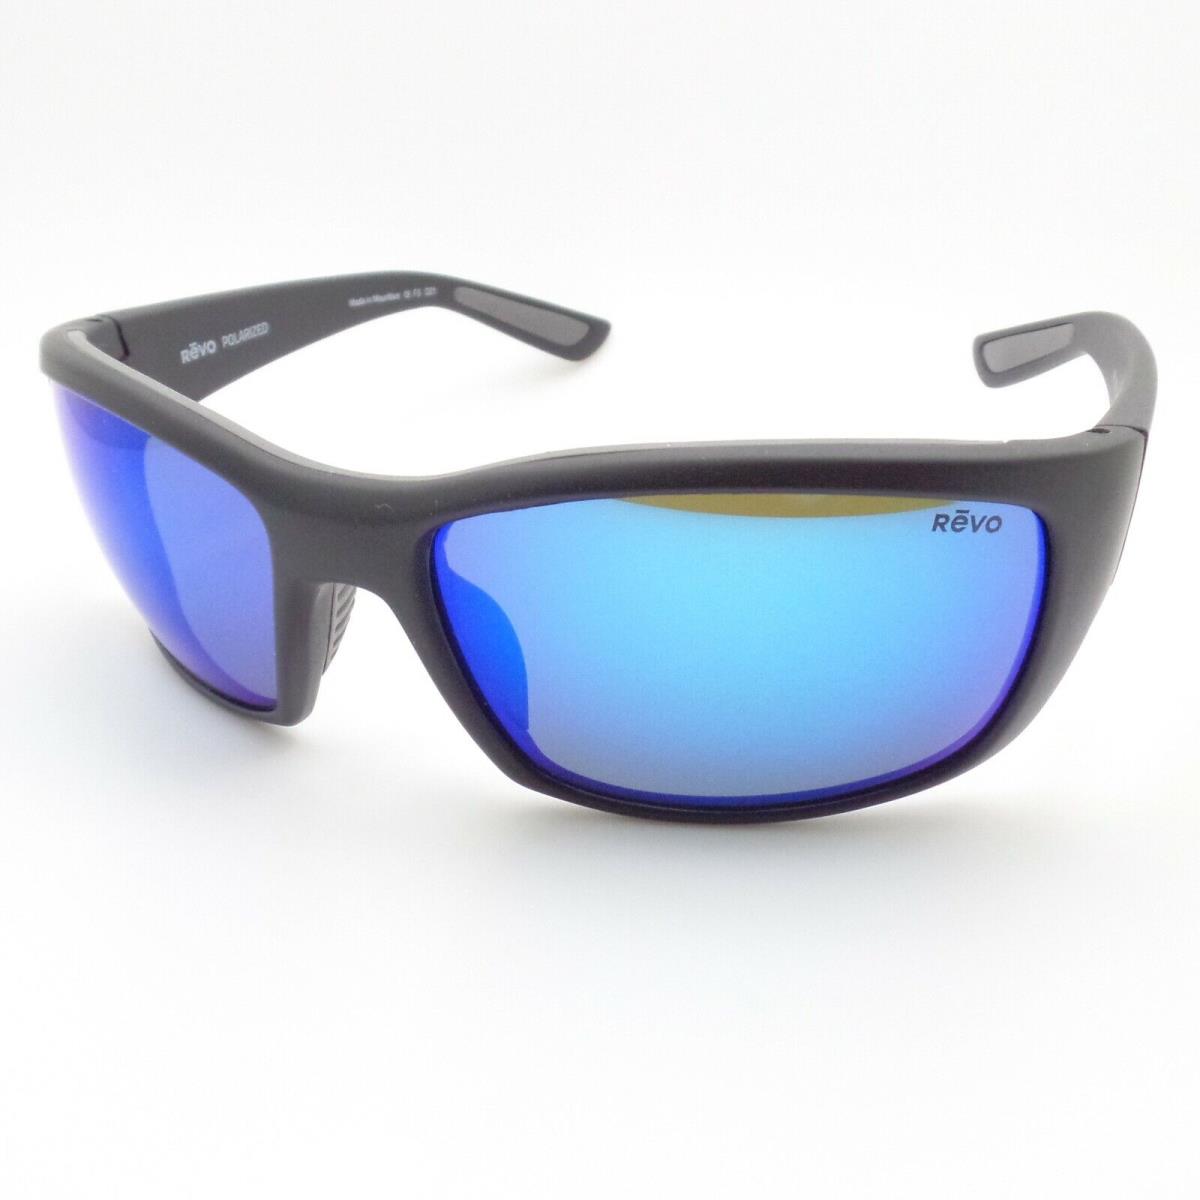 Revo sunglasses Dexter - Black Matte Frame, Blue Water Lens